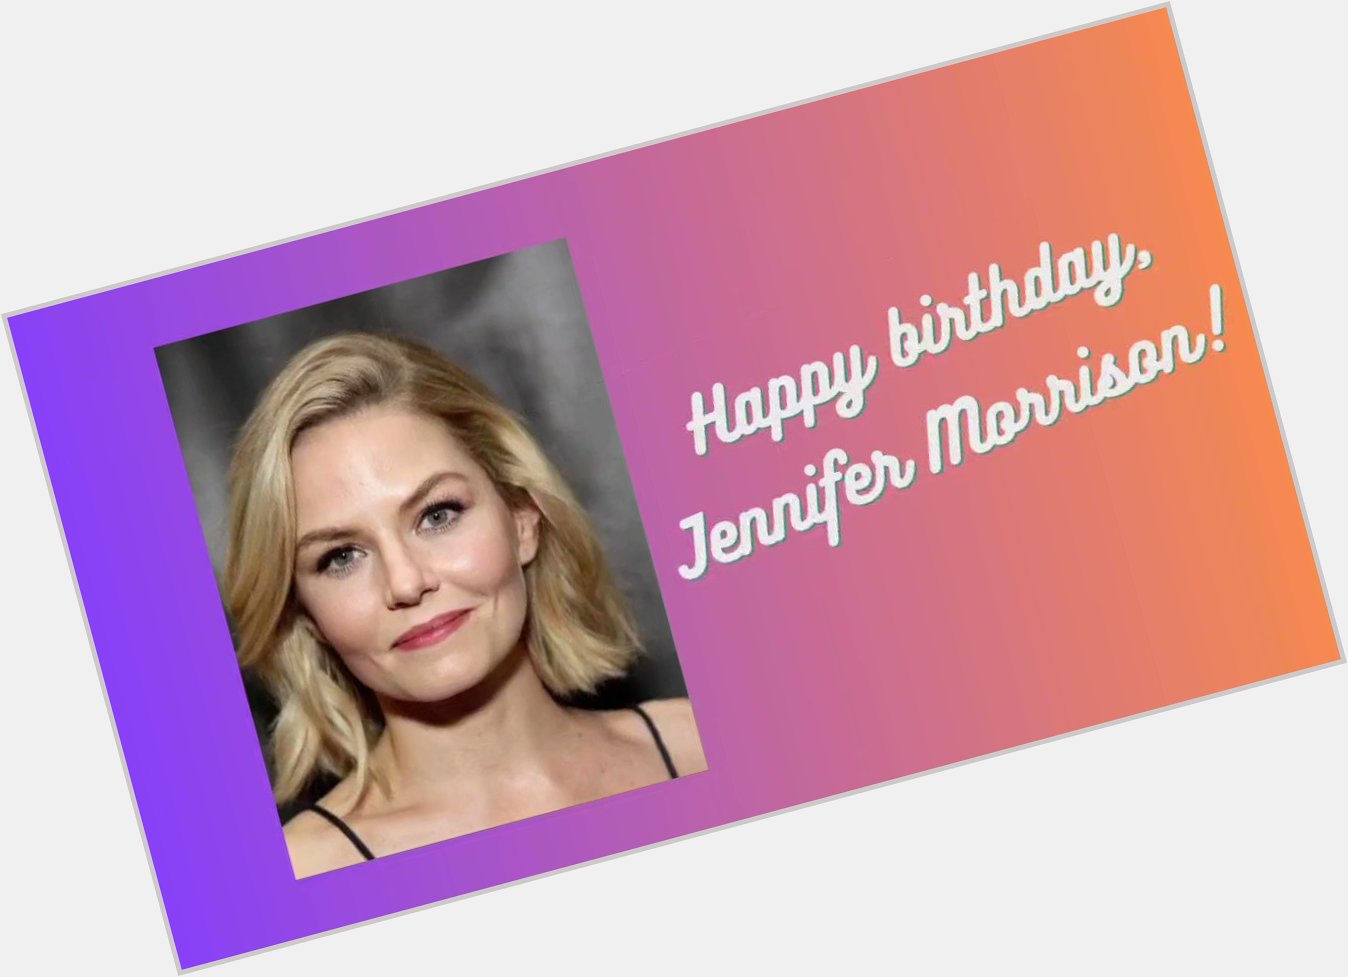 Happy birthday, Jennifer Morrison!   